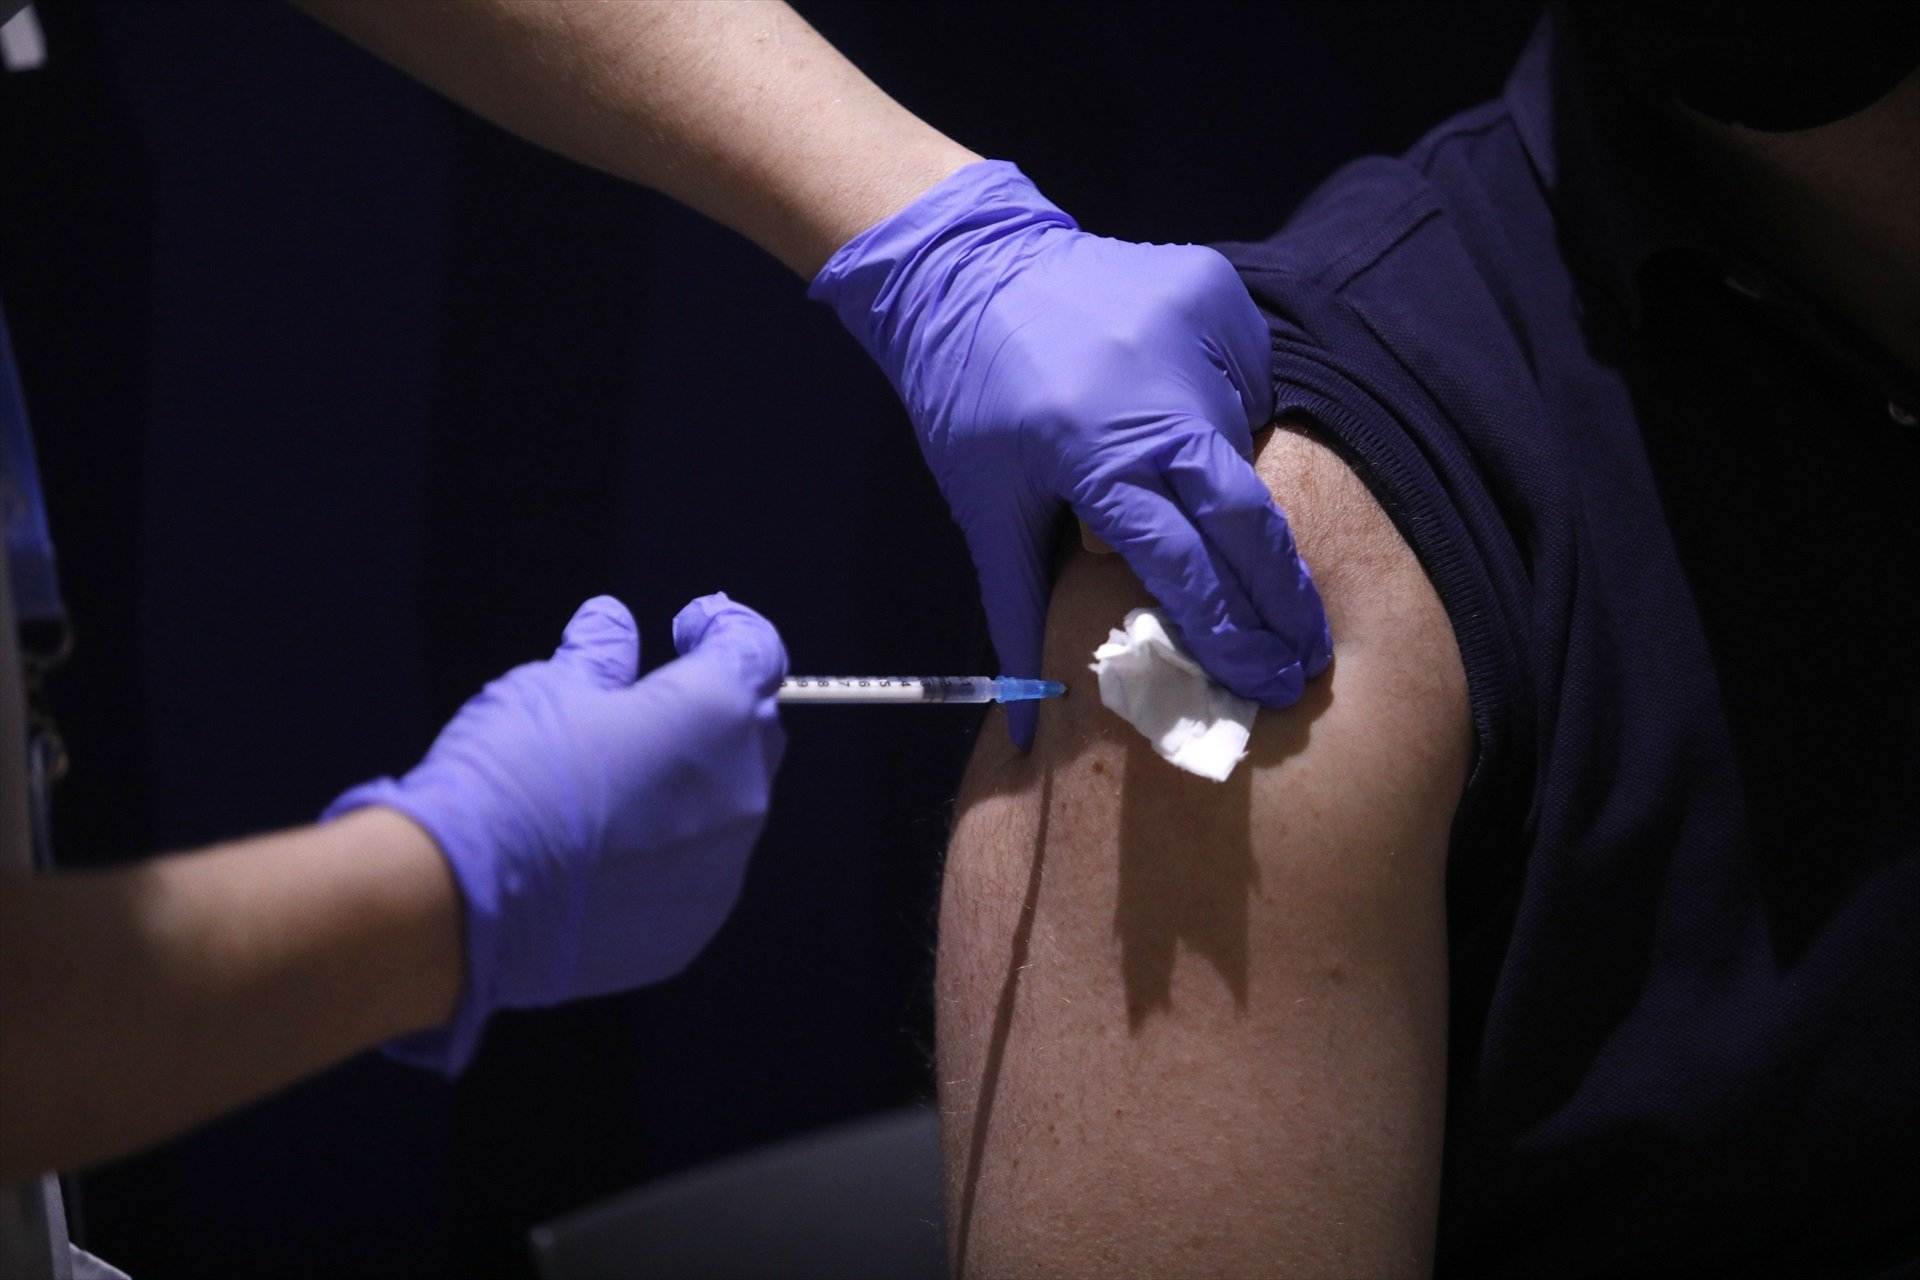 Un home rep una dosi de la vacuna contra la Covid-19 a Barcelona, en una imatge d'arxiu / KIKE RINCÓN - EUROPA PRESS - ARXIU